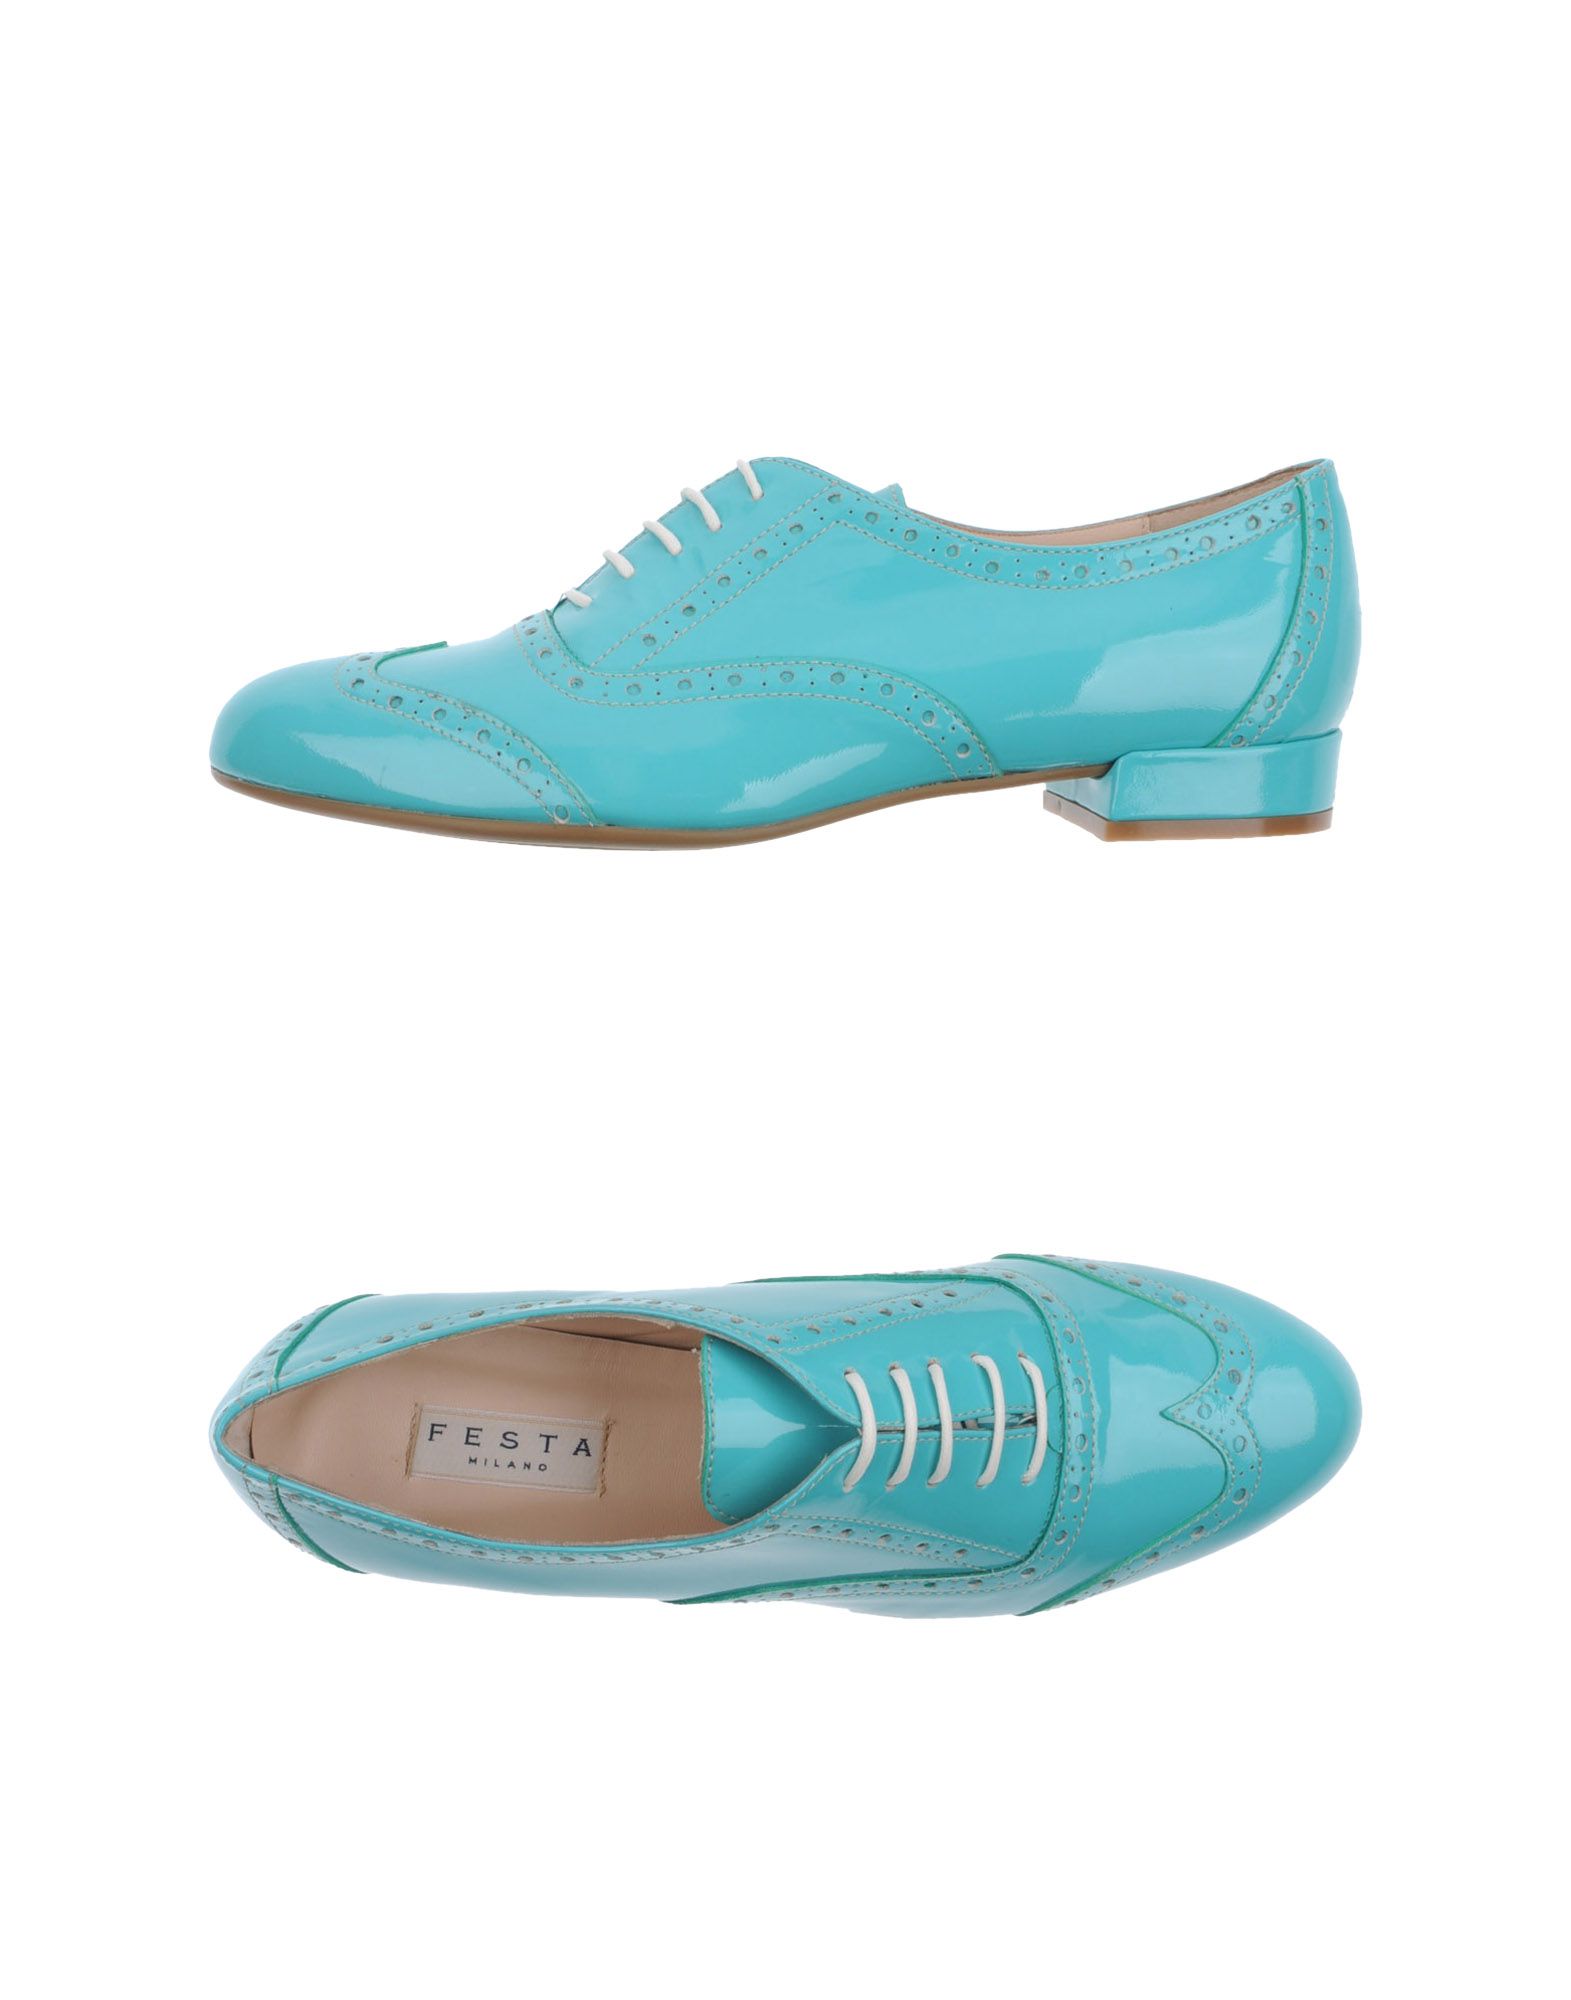 Foto Festamilano Zapatos De Cordones Mujer Azul turquesa